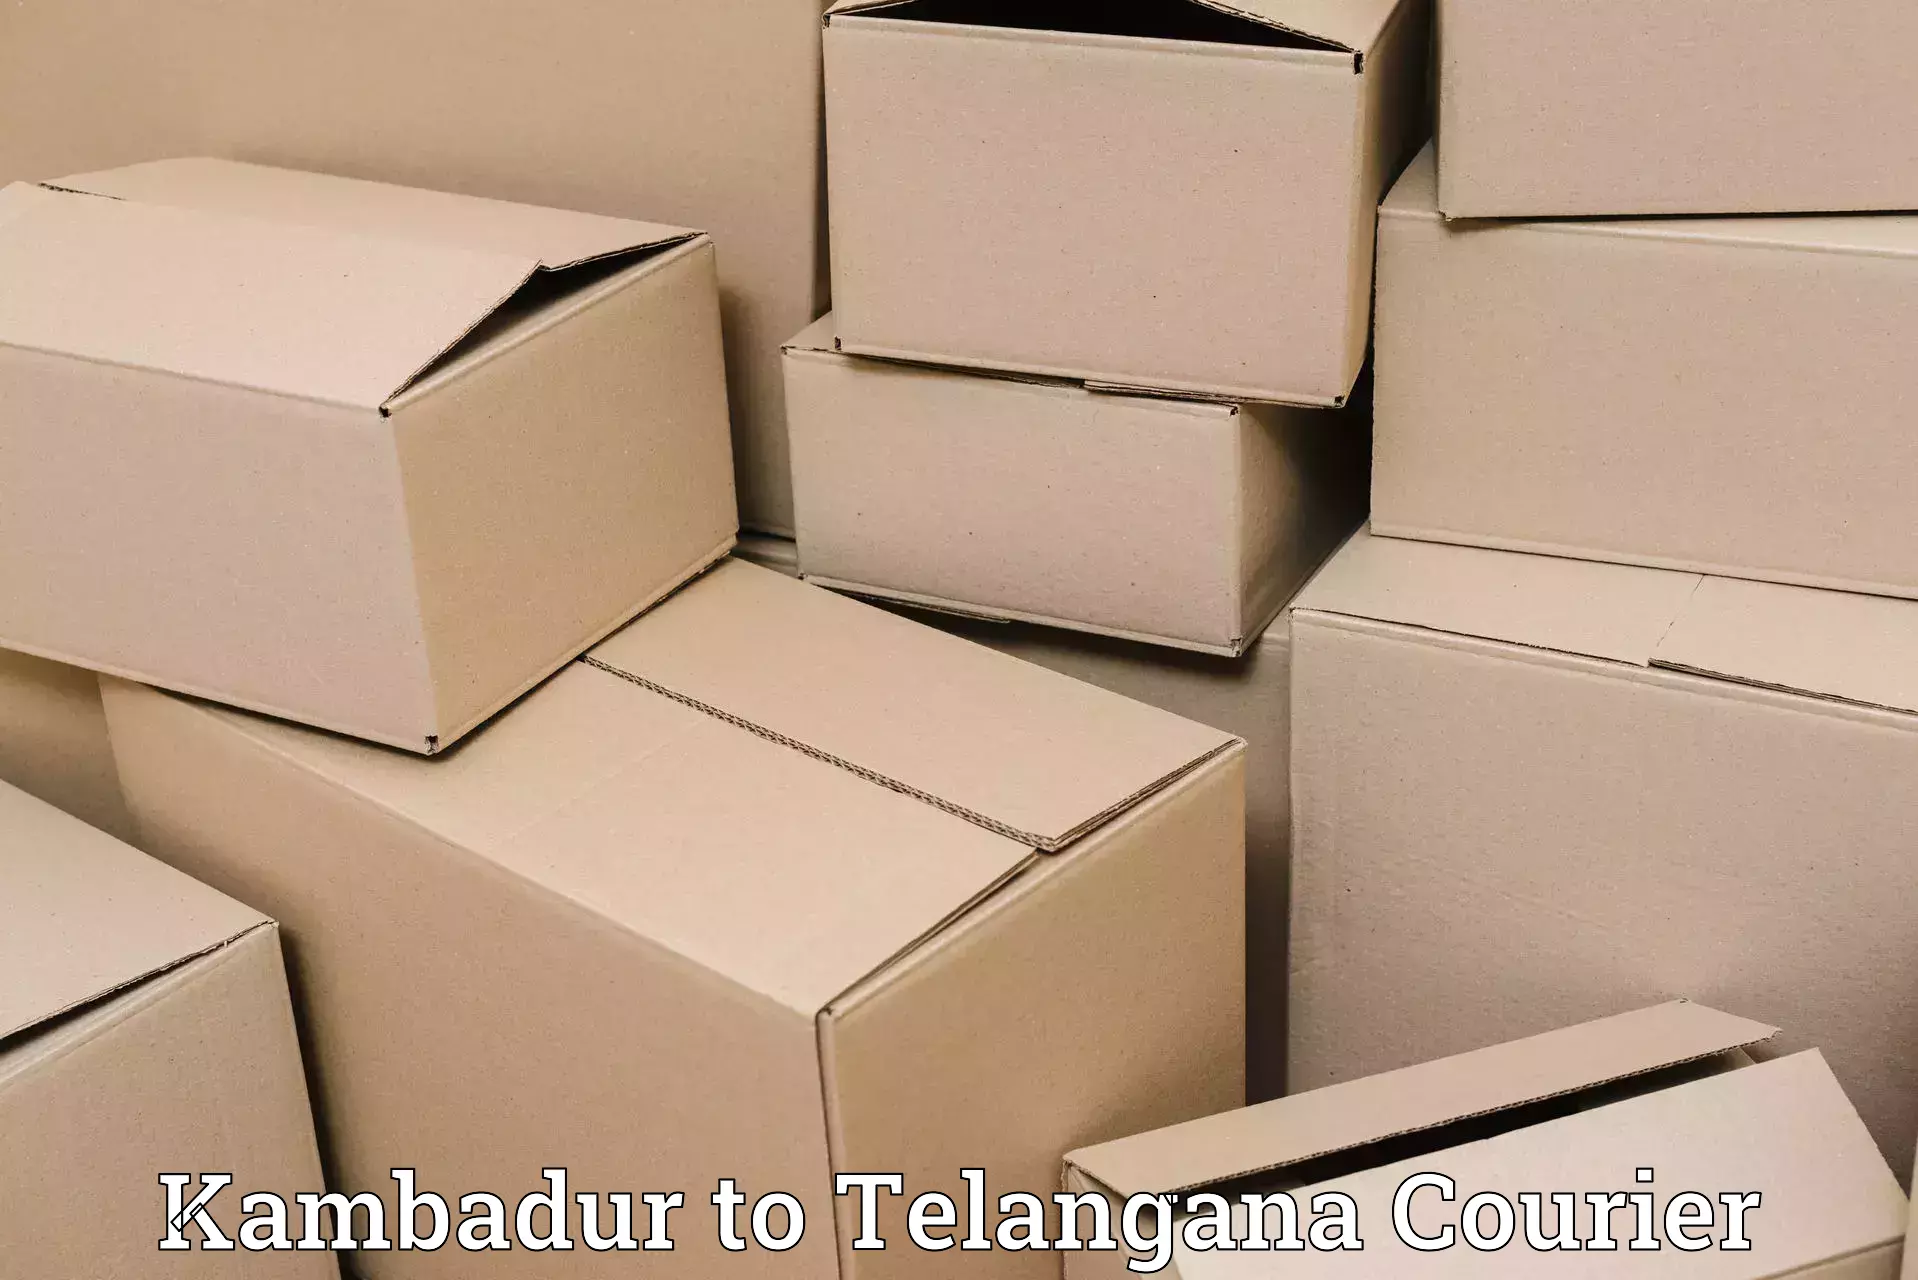 Cargo delivery service Kambadur to Shamshabad